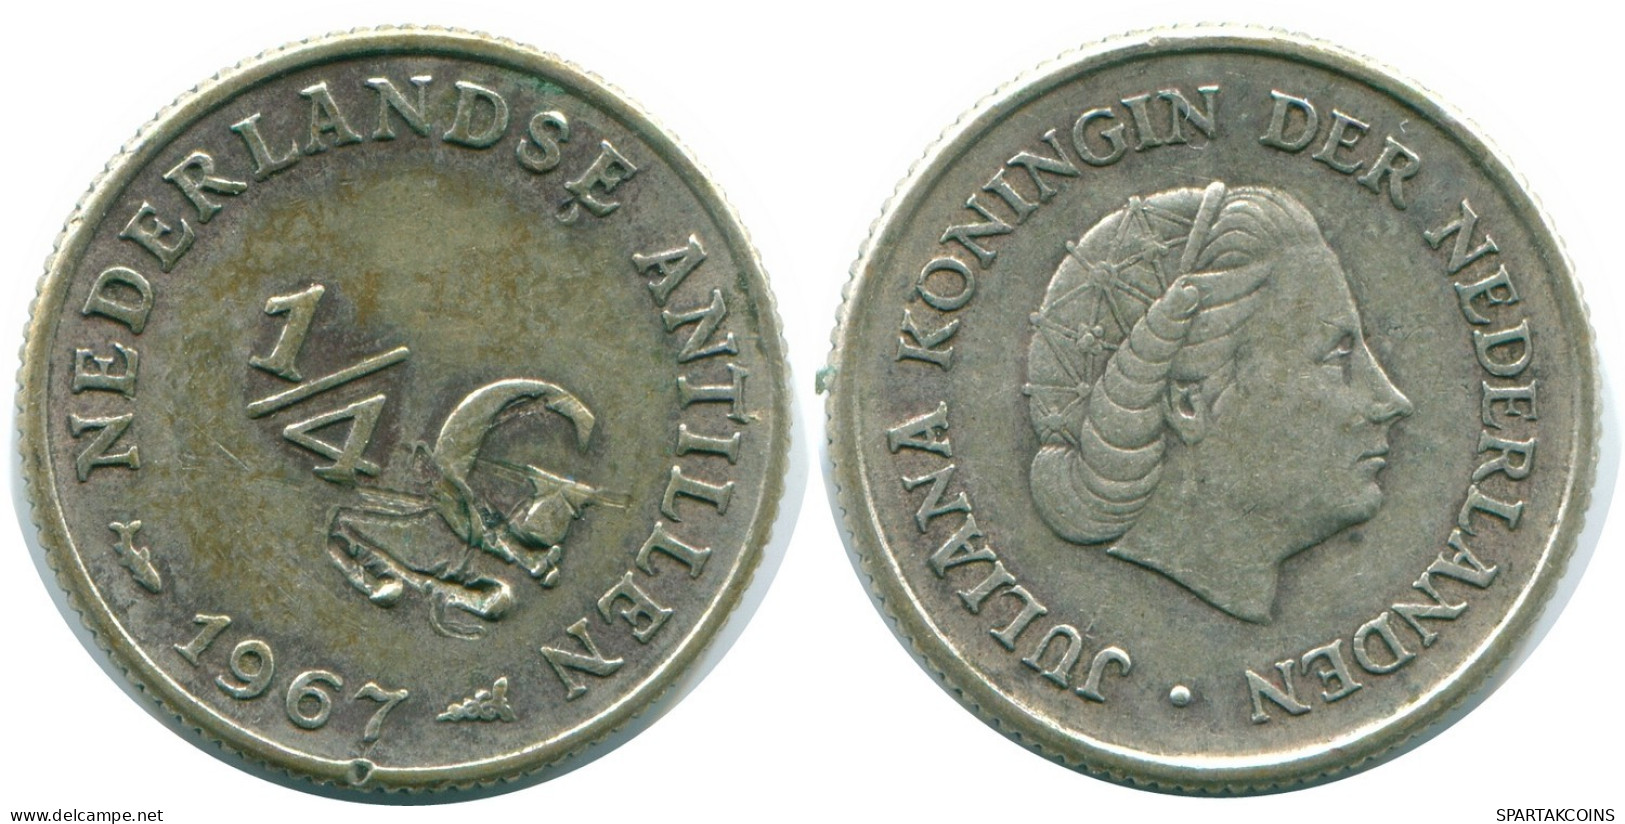 1/4 GULDEN 1967 NIEDERLÄNDISCHE ANTILLEN SILBER Koloniale Münze #NL11525.4.D.A - Niederländische Antillen